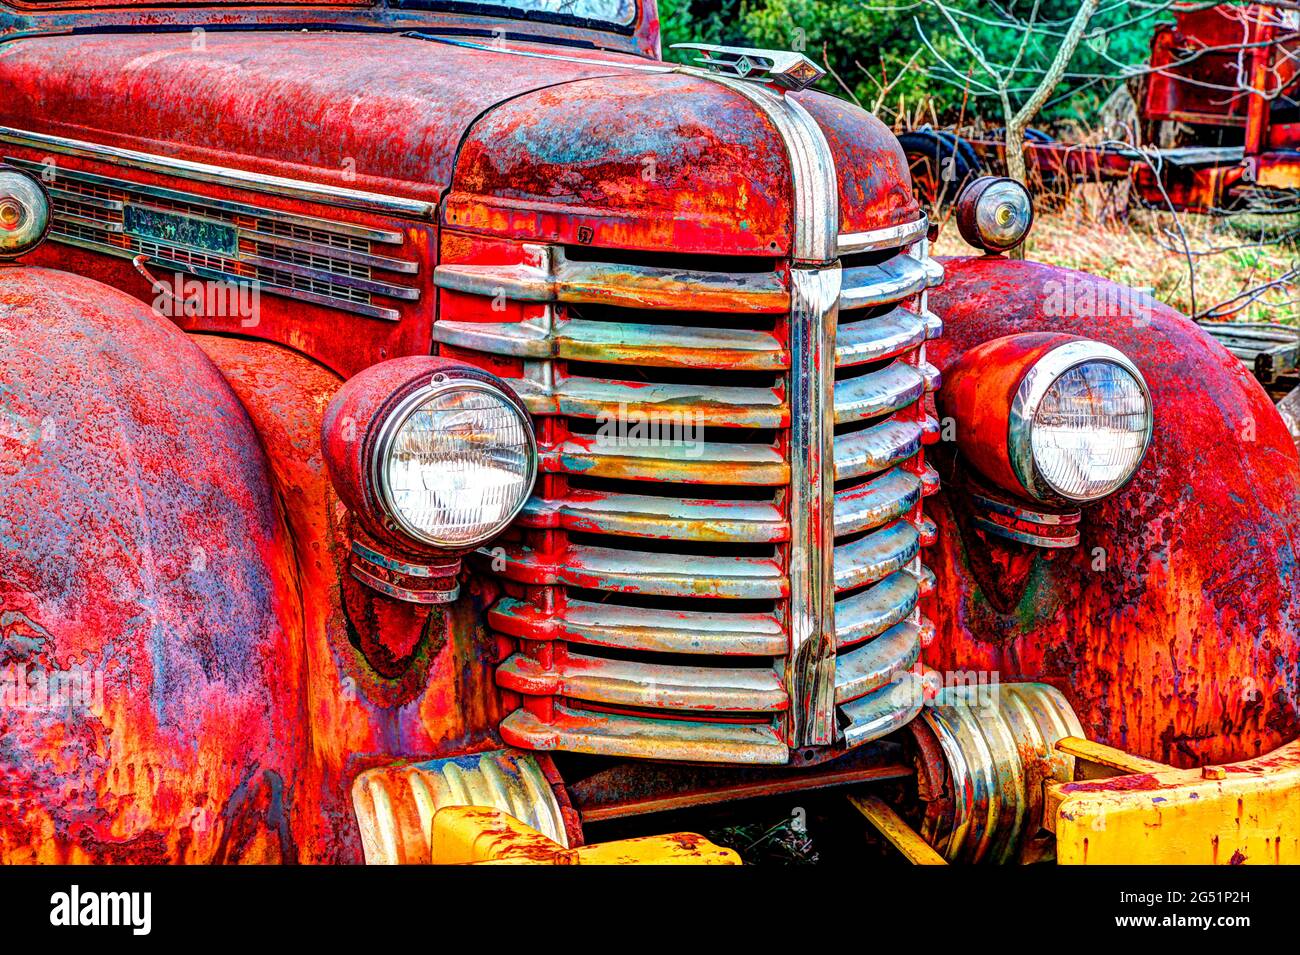 Dettaglio del vecchio camion arrugginito abbandonato, Oversiel, Michigan, USA Foto Stock